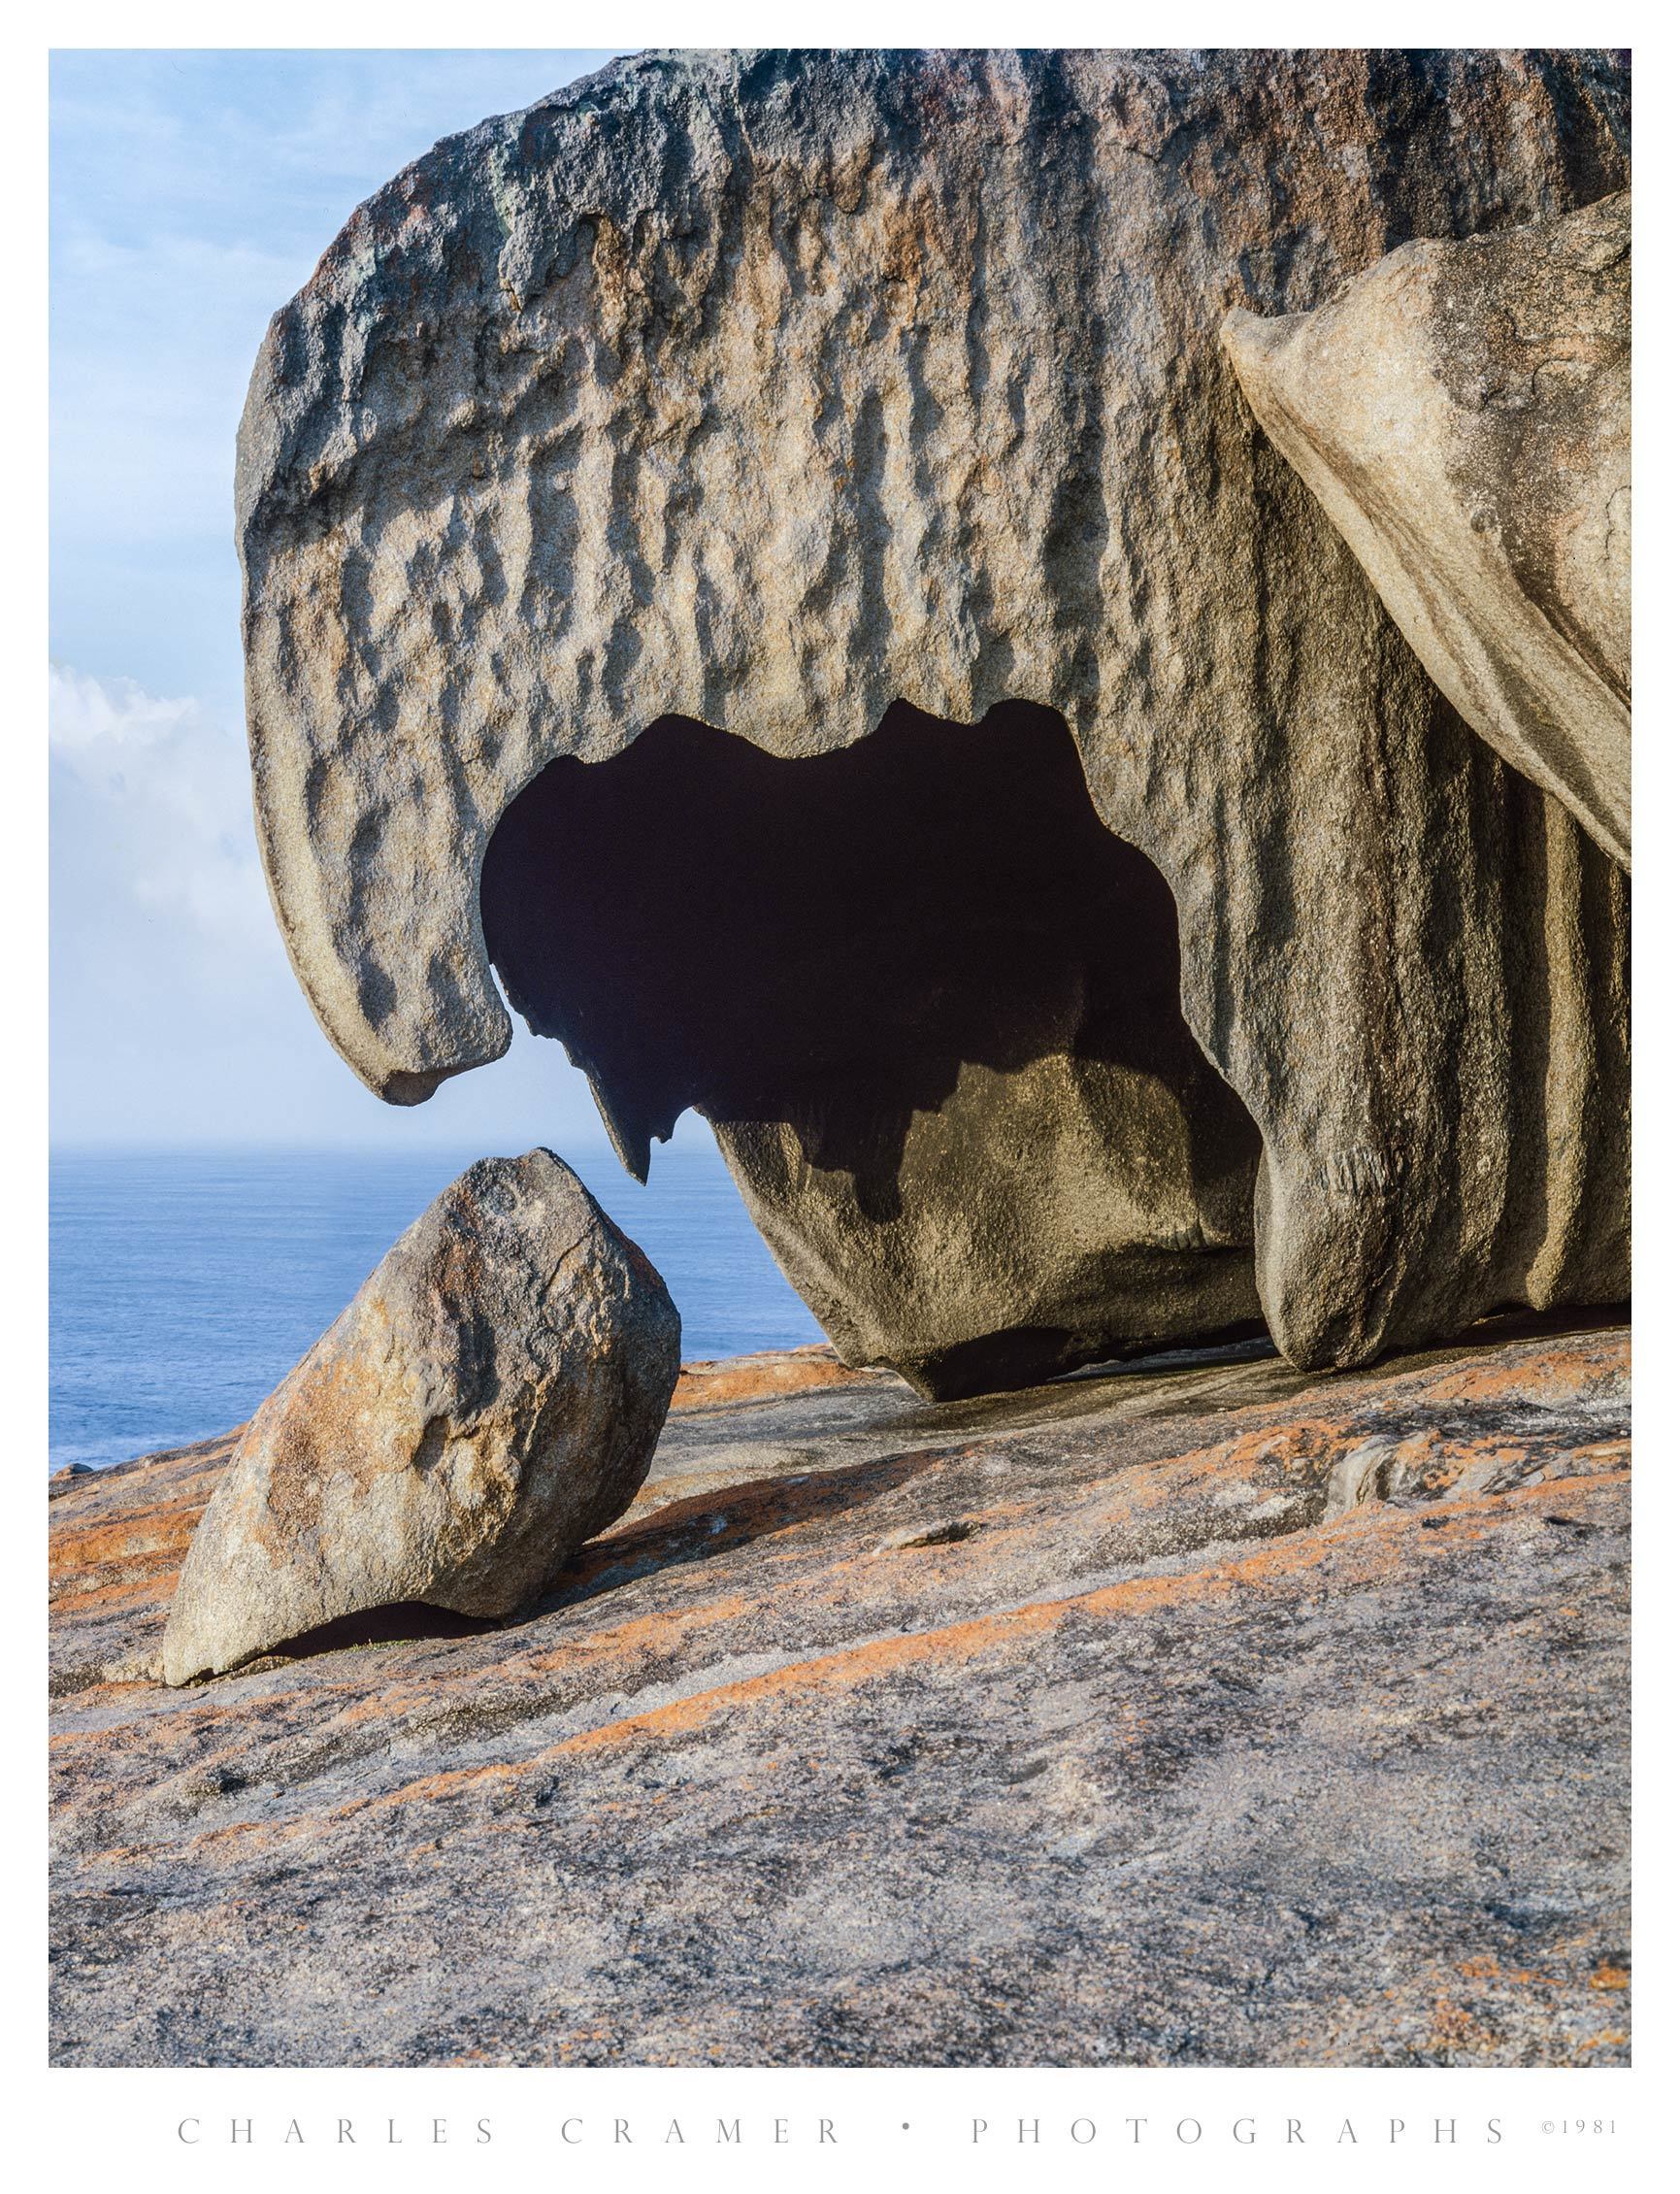 Parrot’s Beak, Remarkable Rocks, Australia